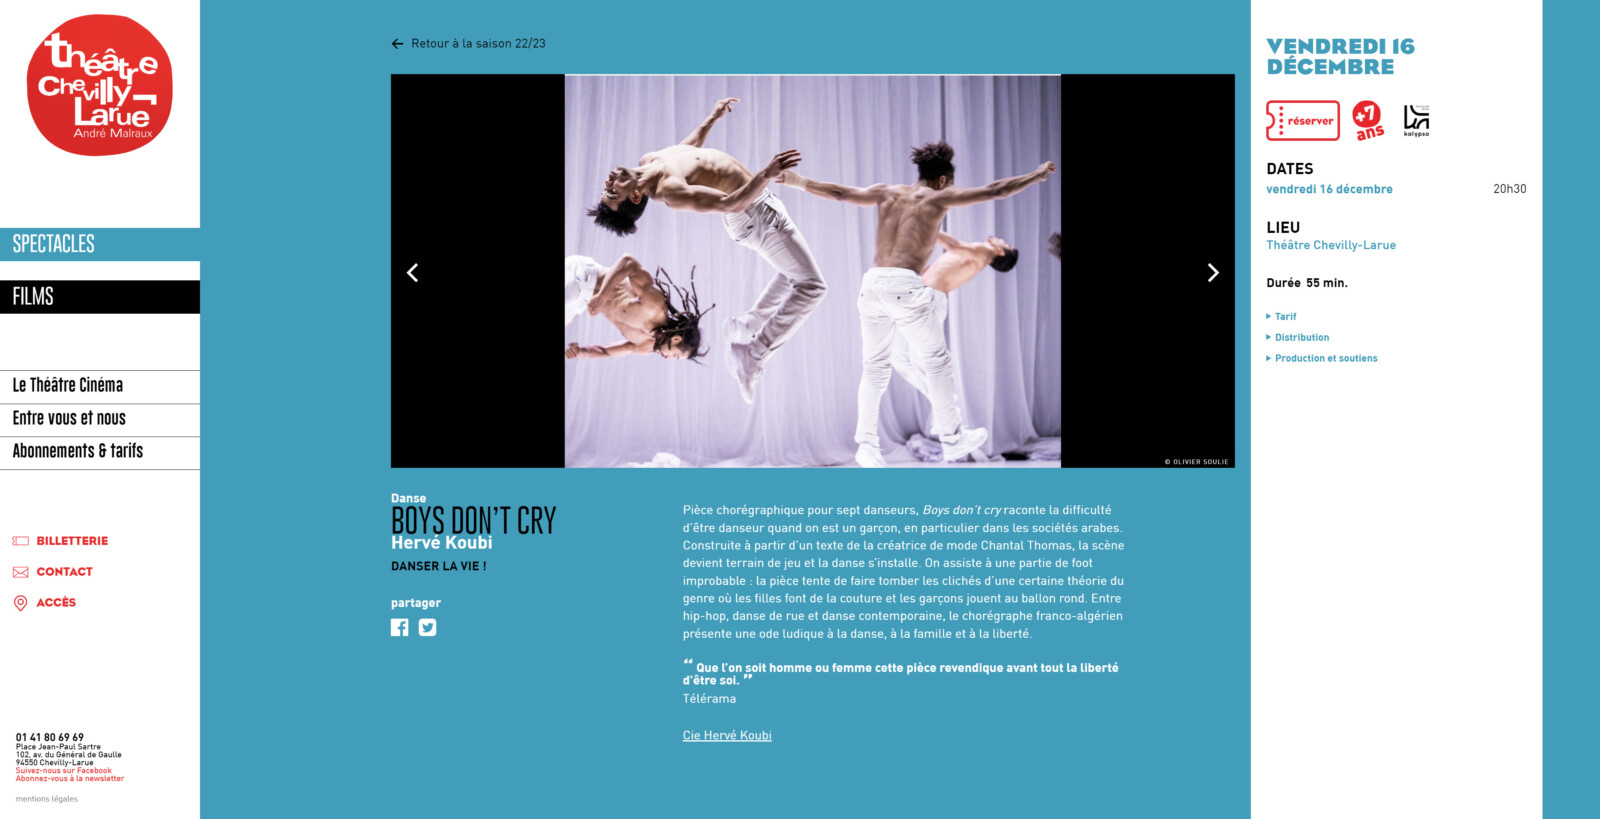 Une page spectacles du site du Théâtre Chevilly-Larue. Elle présente la pièce chorégraphique « Boys don’t cry ». Les danseurs torse nu en jeans blancs se livrent à des acrobaties.